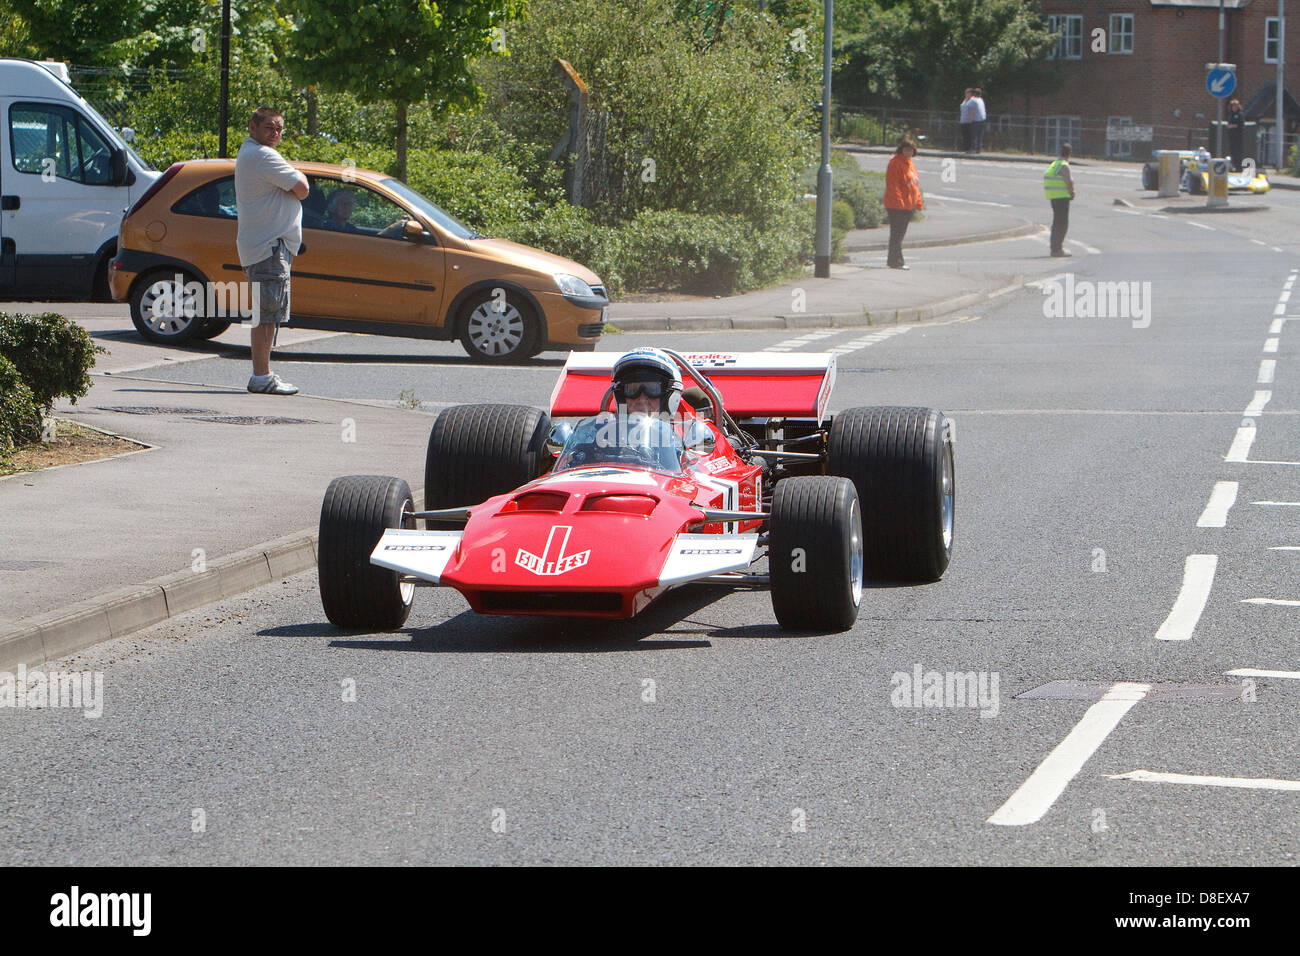 John Surtees OBE lors de la fun day à Edenbridge avec sa TS7 voiture de Formule 1 qu'il a également conduit à la grande joie des spectateurs. Banque D'Images